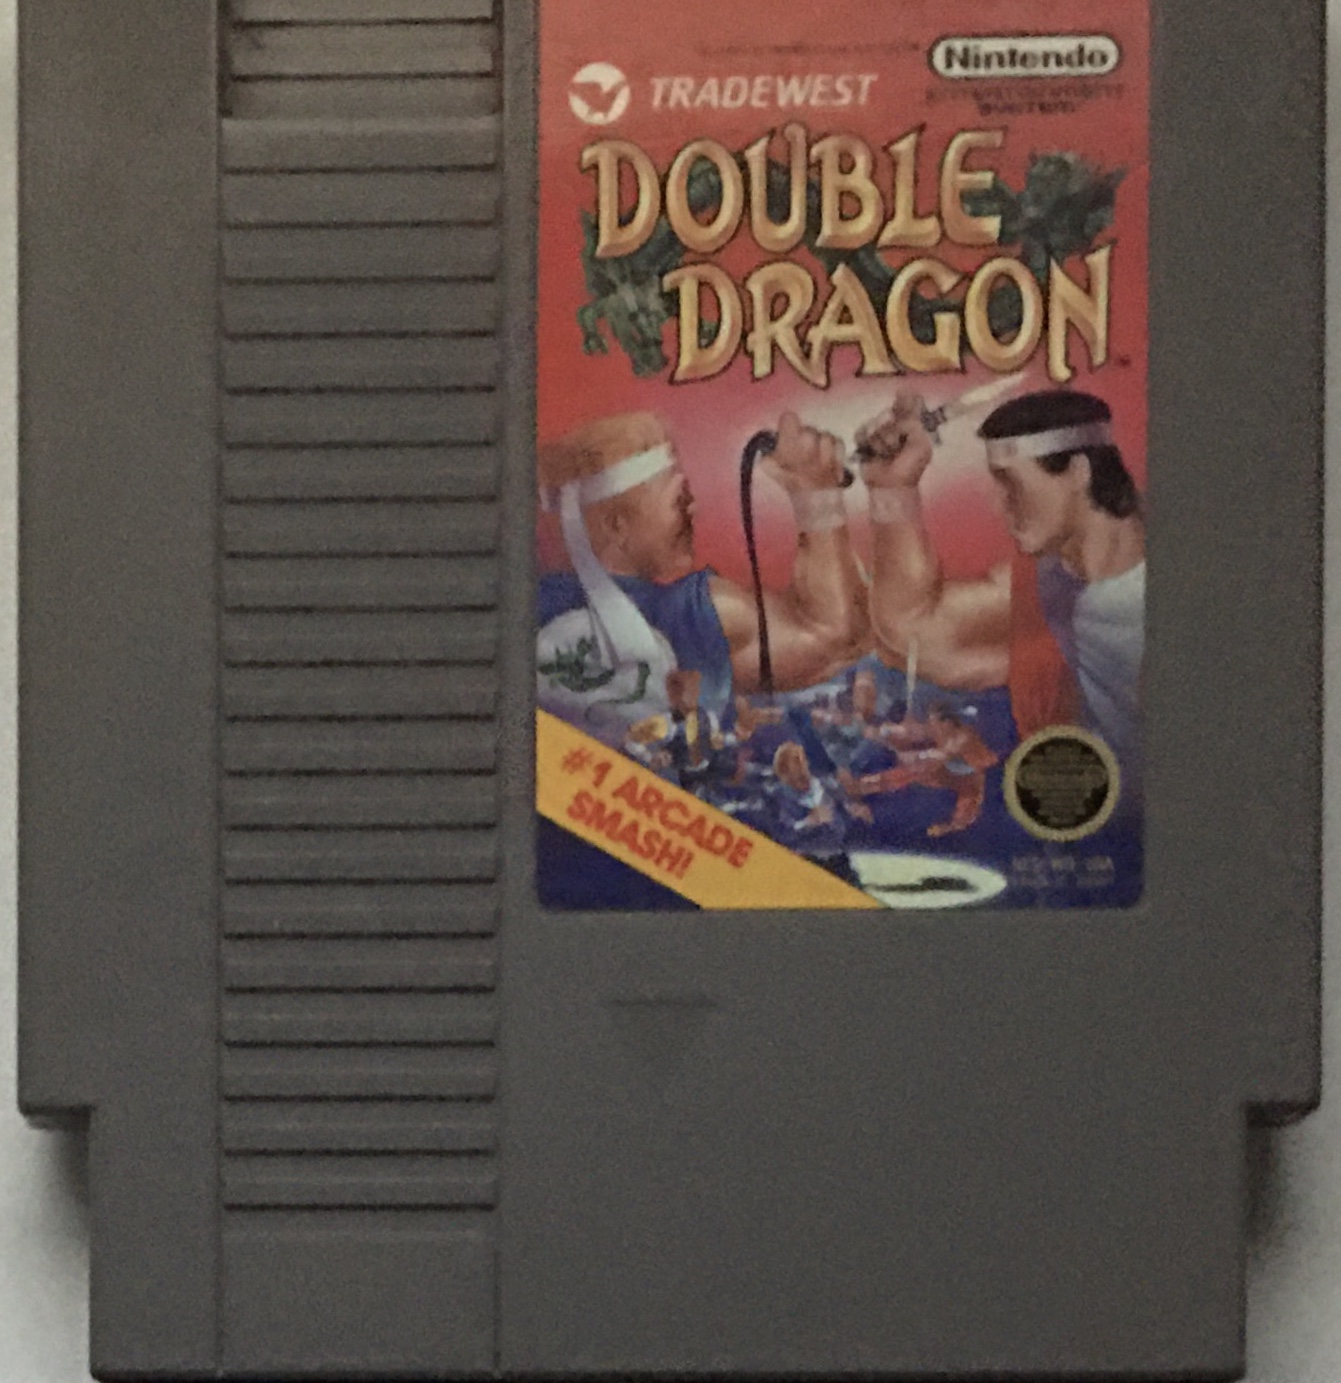 Double Dragon ダブルドラゴン 双截龍【新品・通常版・北米版】